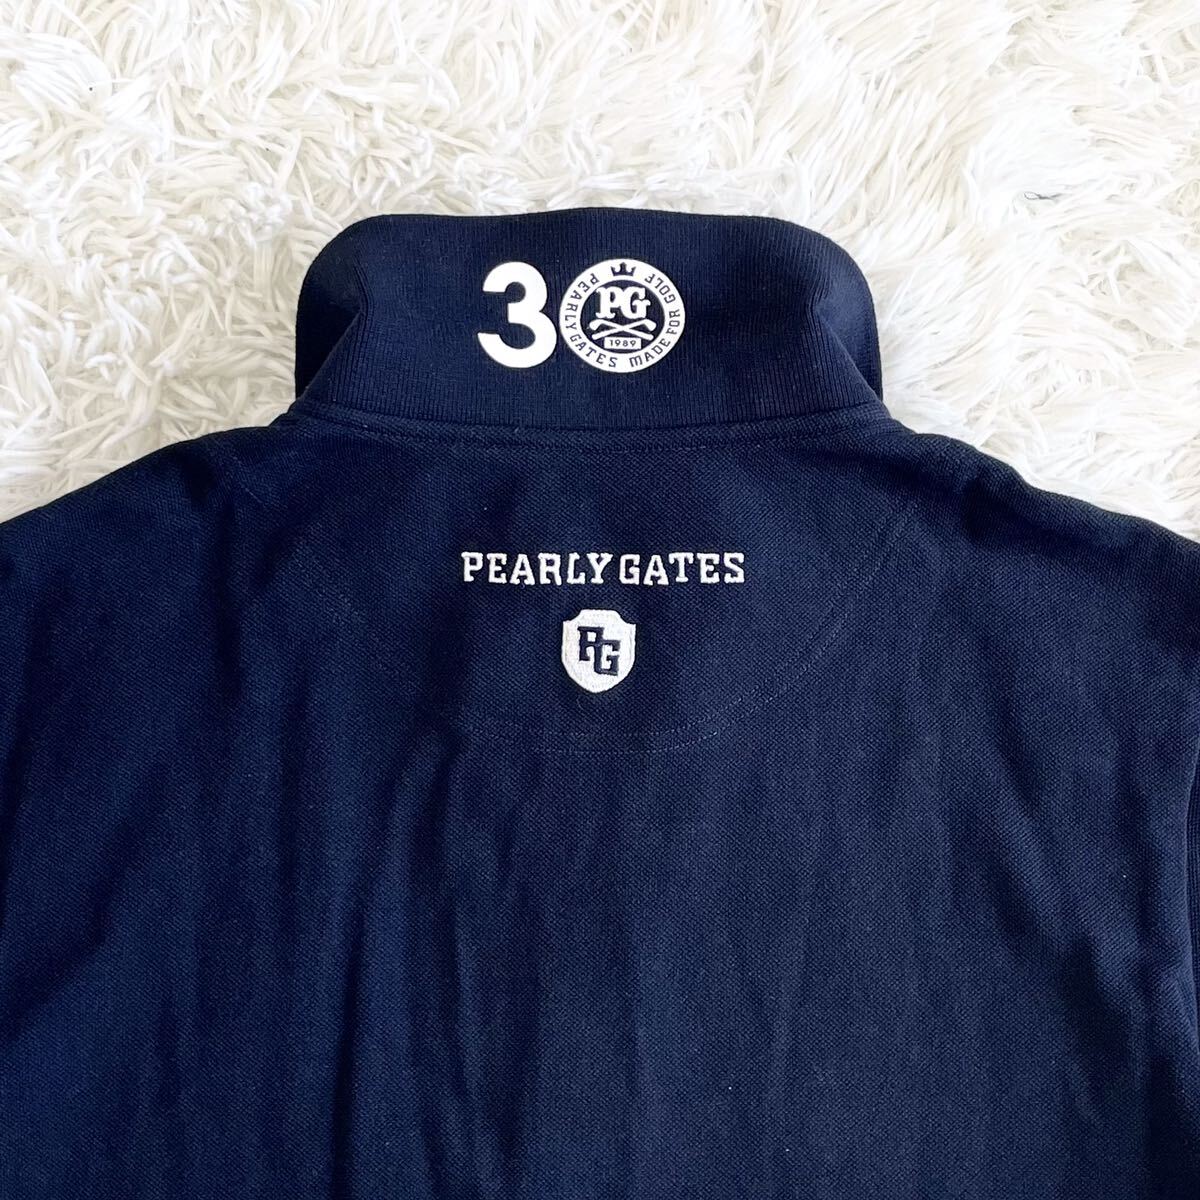 1 иен ~[ прекрасный товар ]PEARLY GATES Pearly Gates 30 anniversary commemoration рубашка-поло с коротким рукавом Golf одежда вышивка Logo нашивка 89 мужской темно-синий 5 полная распродажа товар 